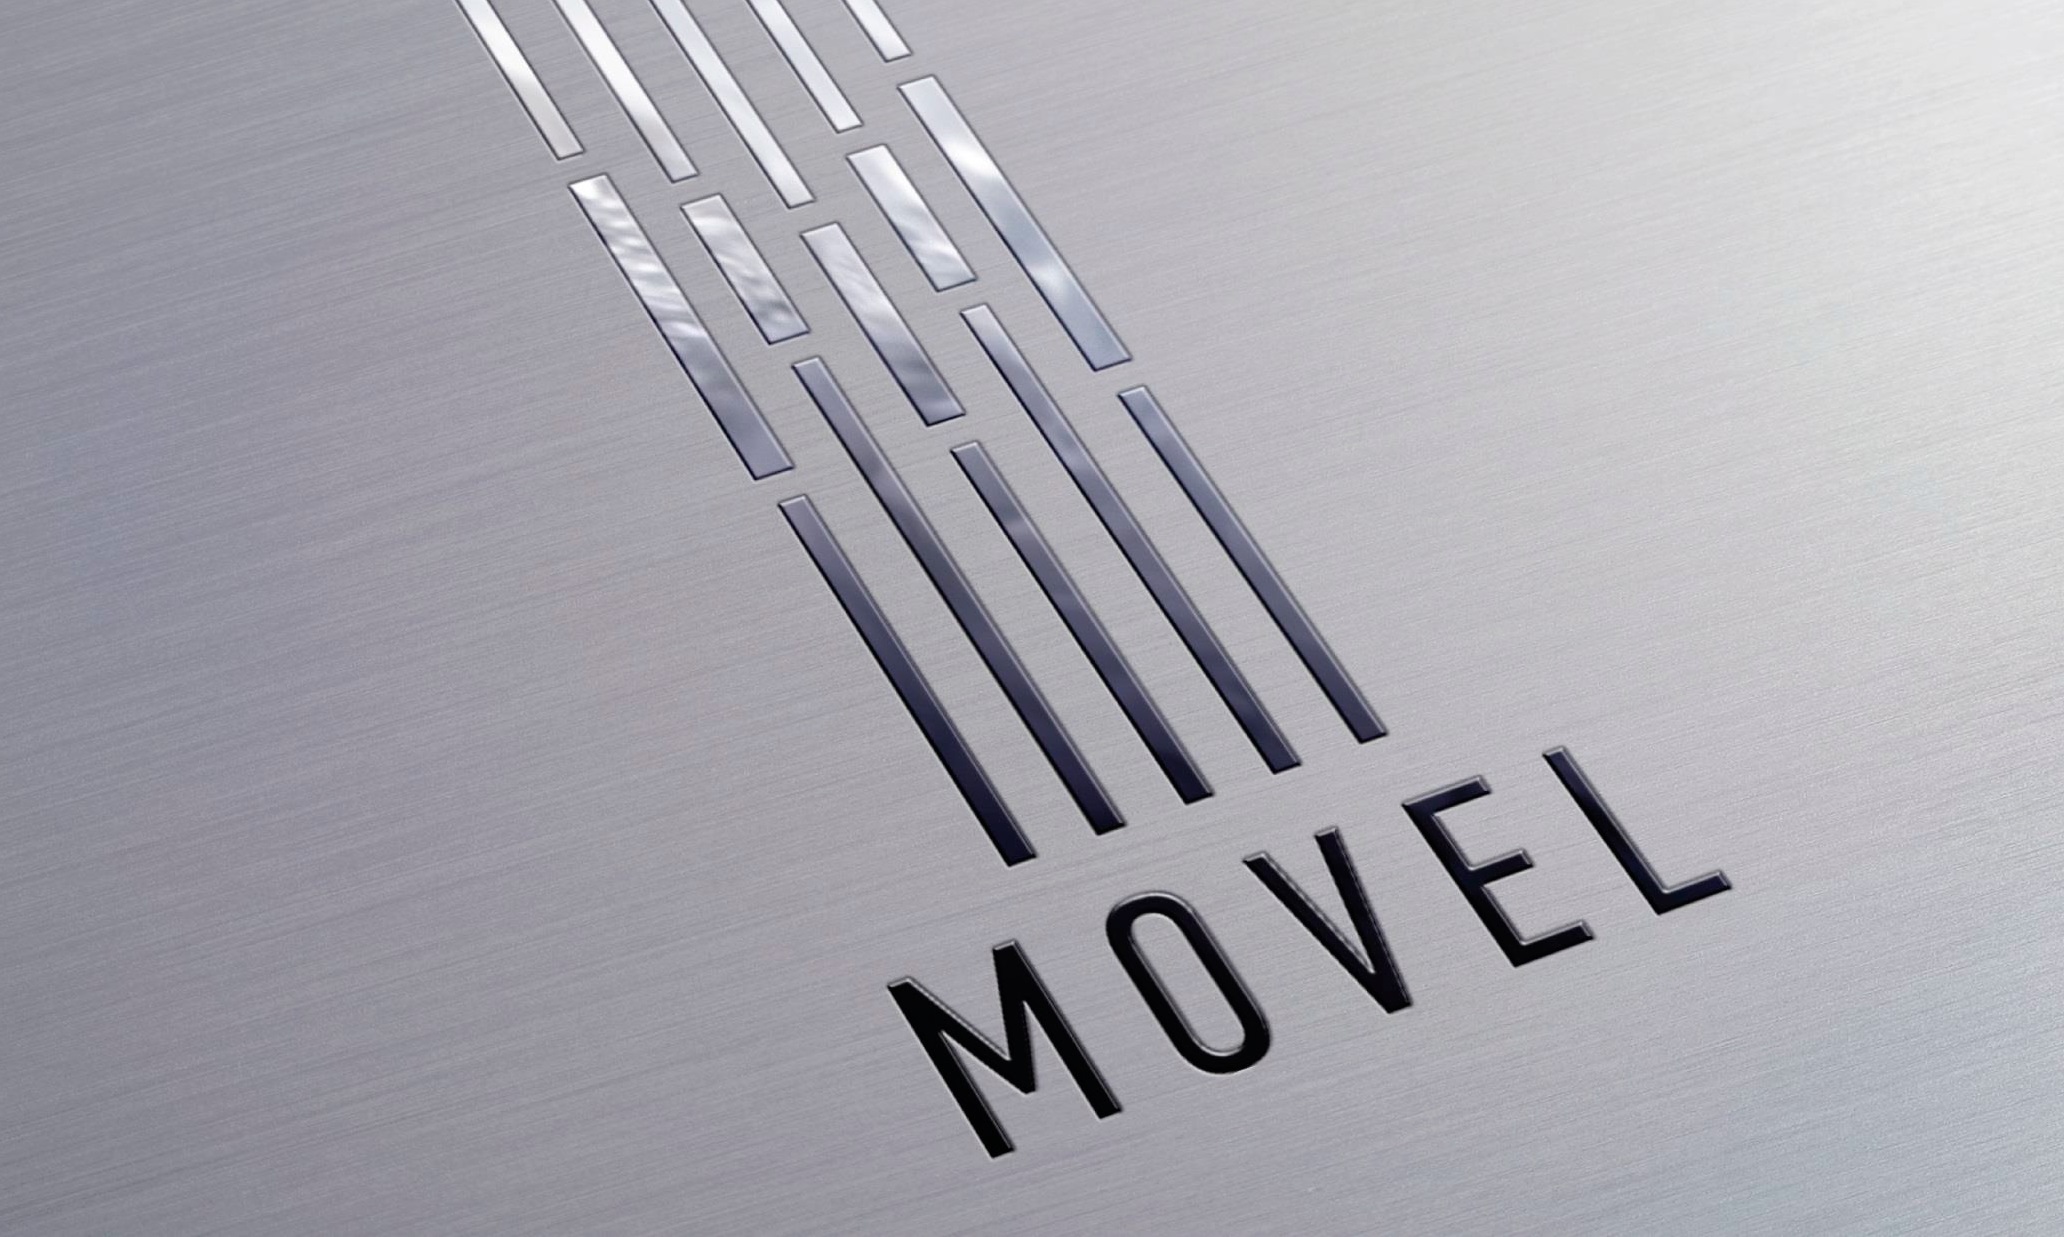 Монтаж пассажирского лифта без машинного помещения бренда MOVEL в новом медицинском центре, строящемся в г. Могилеве.